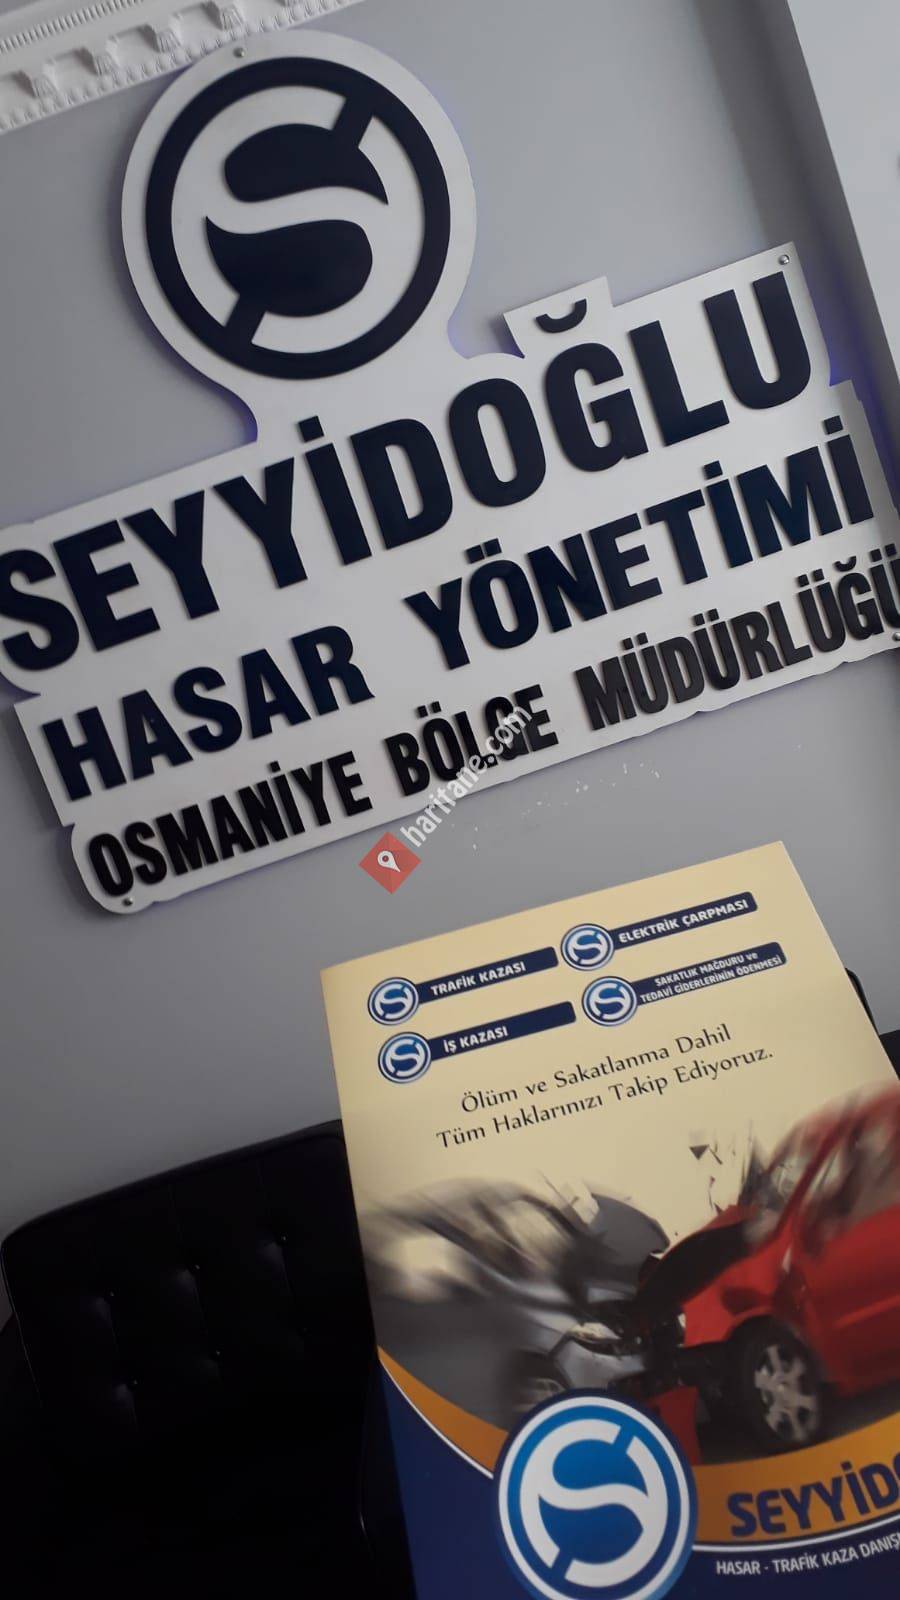 Seyyidoğlu Hasar Yönetimi Osmaniye Bölge Müdürlüğü